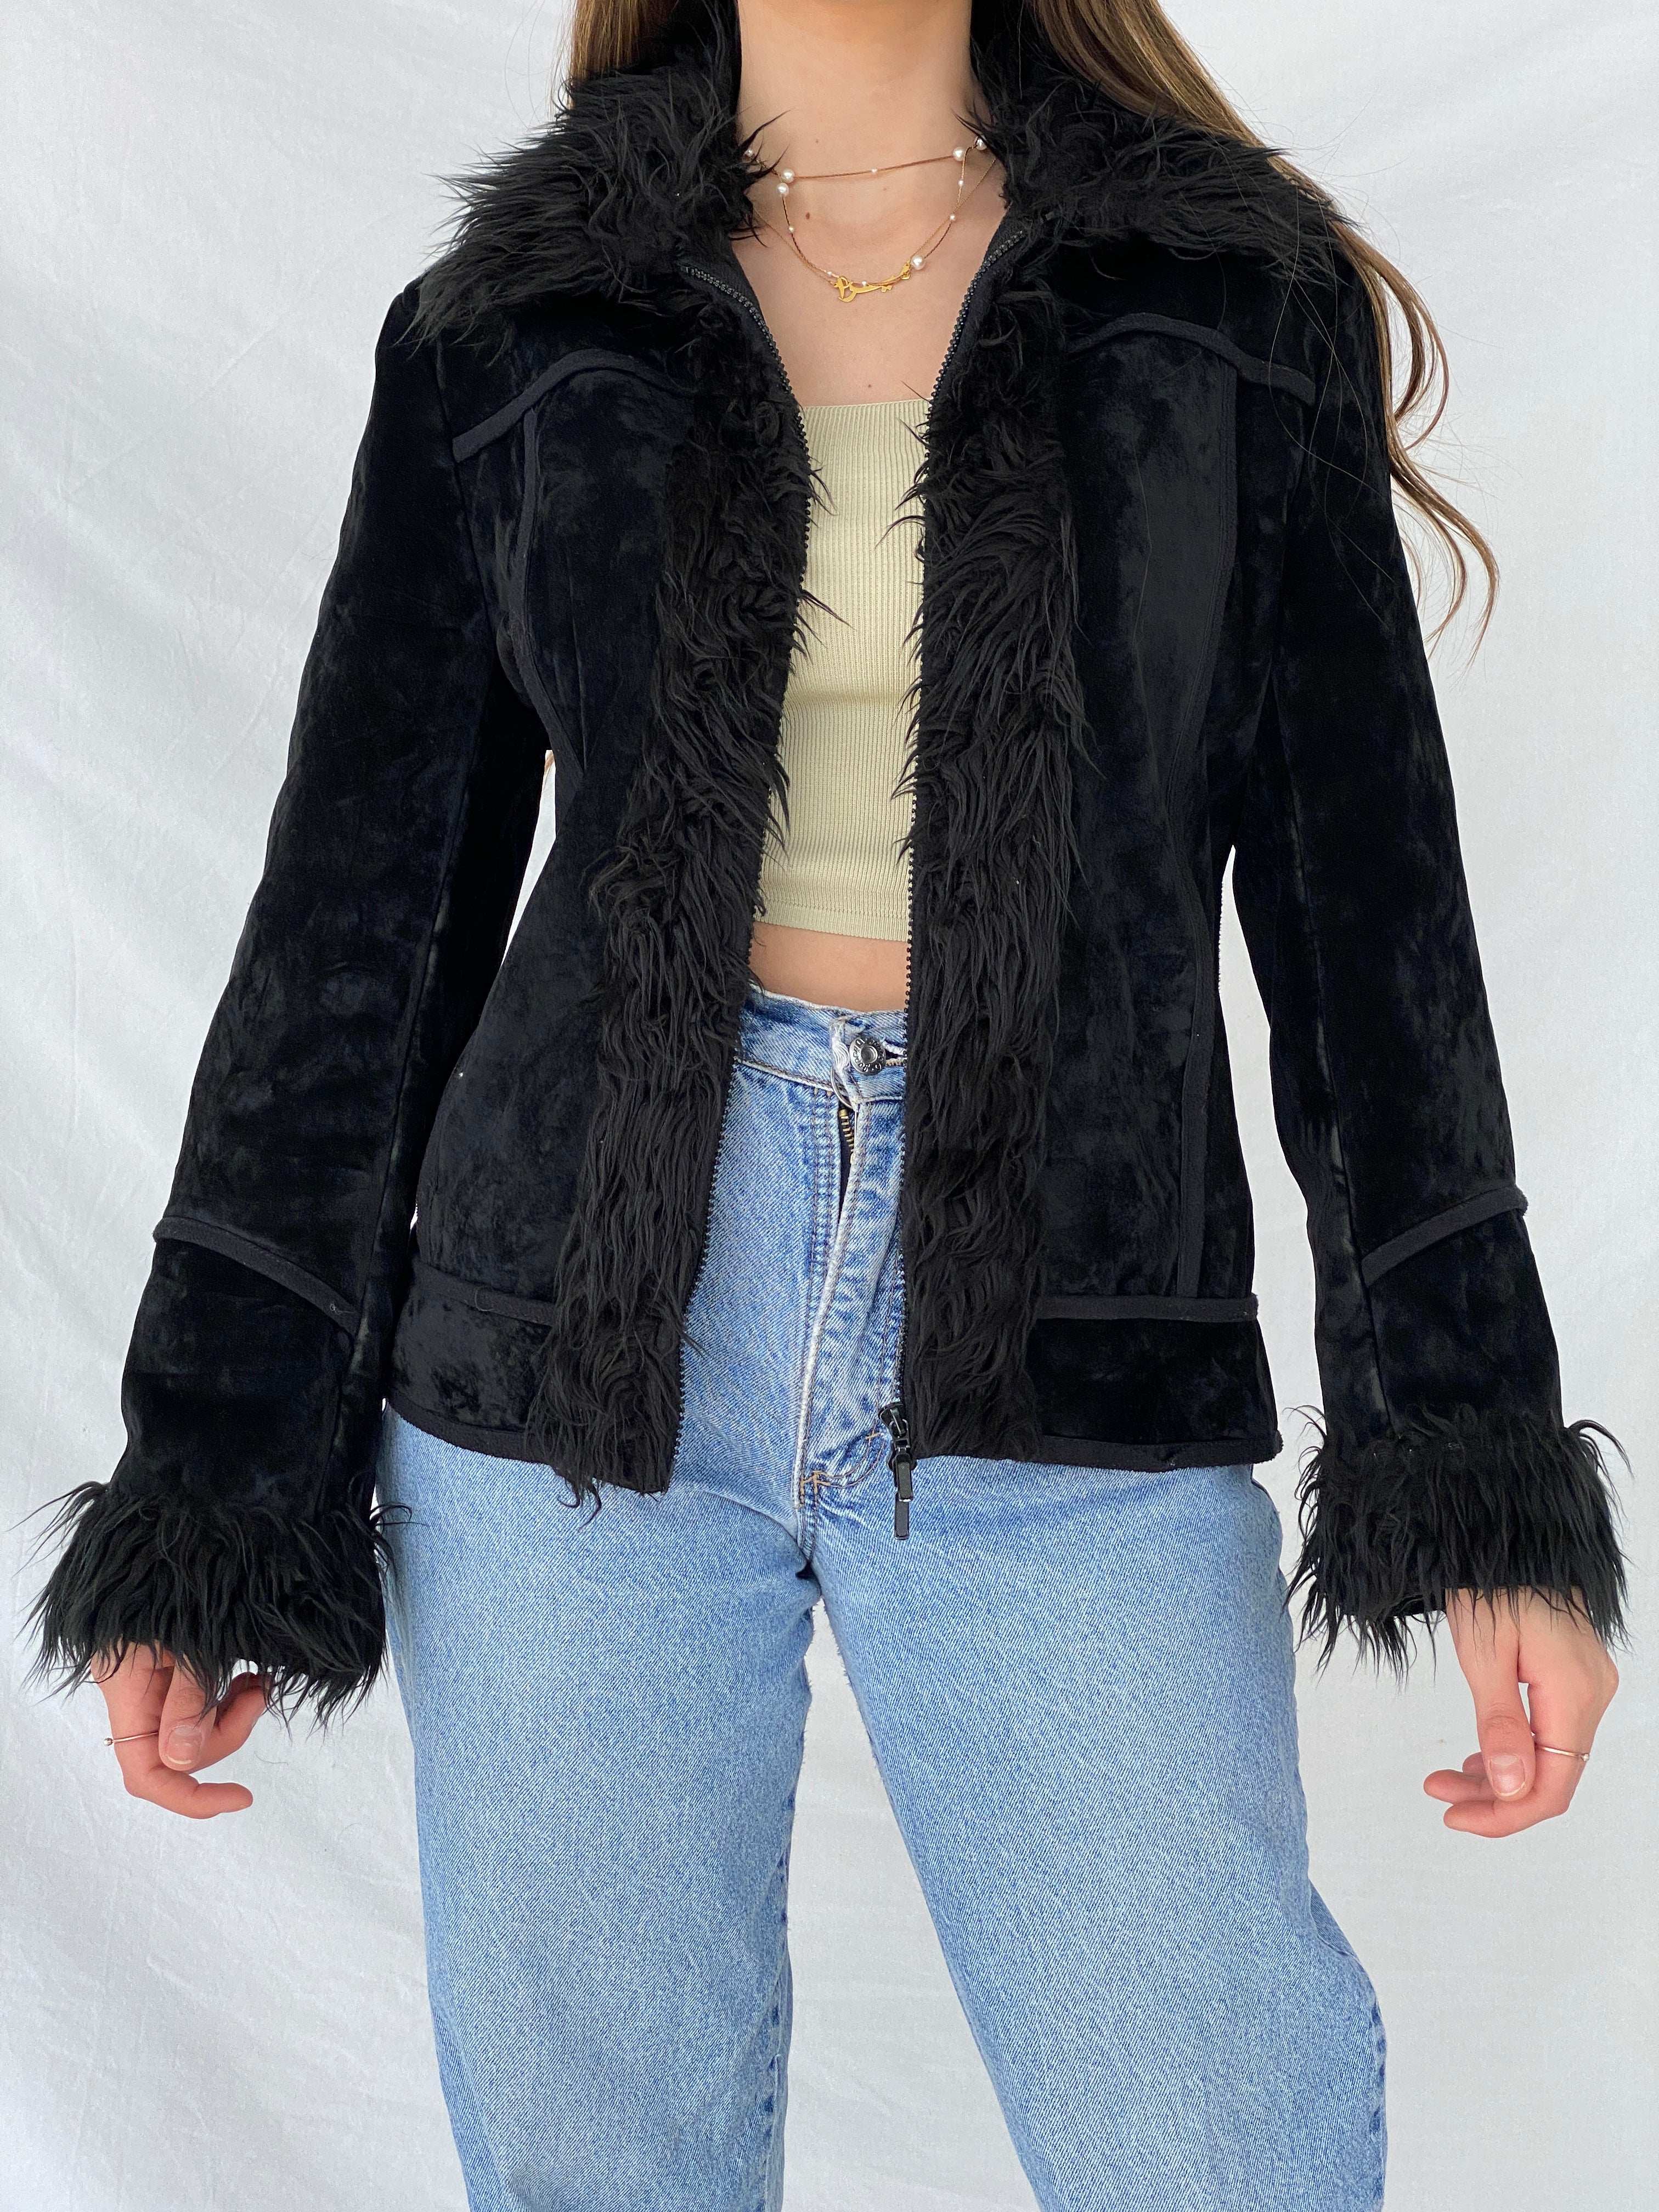 Beautiful Vintage Y2K Miss Eighteen Afghan Style Fur-Lined Jacket